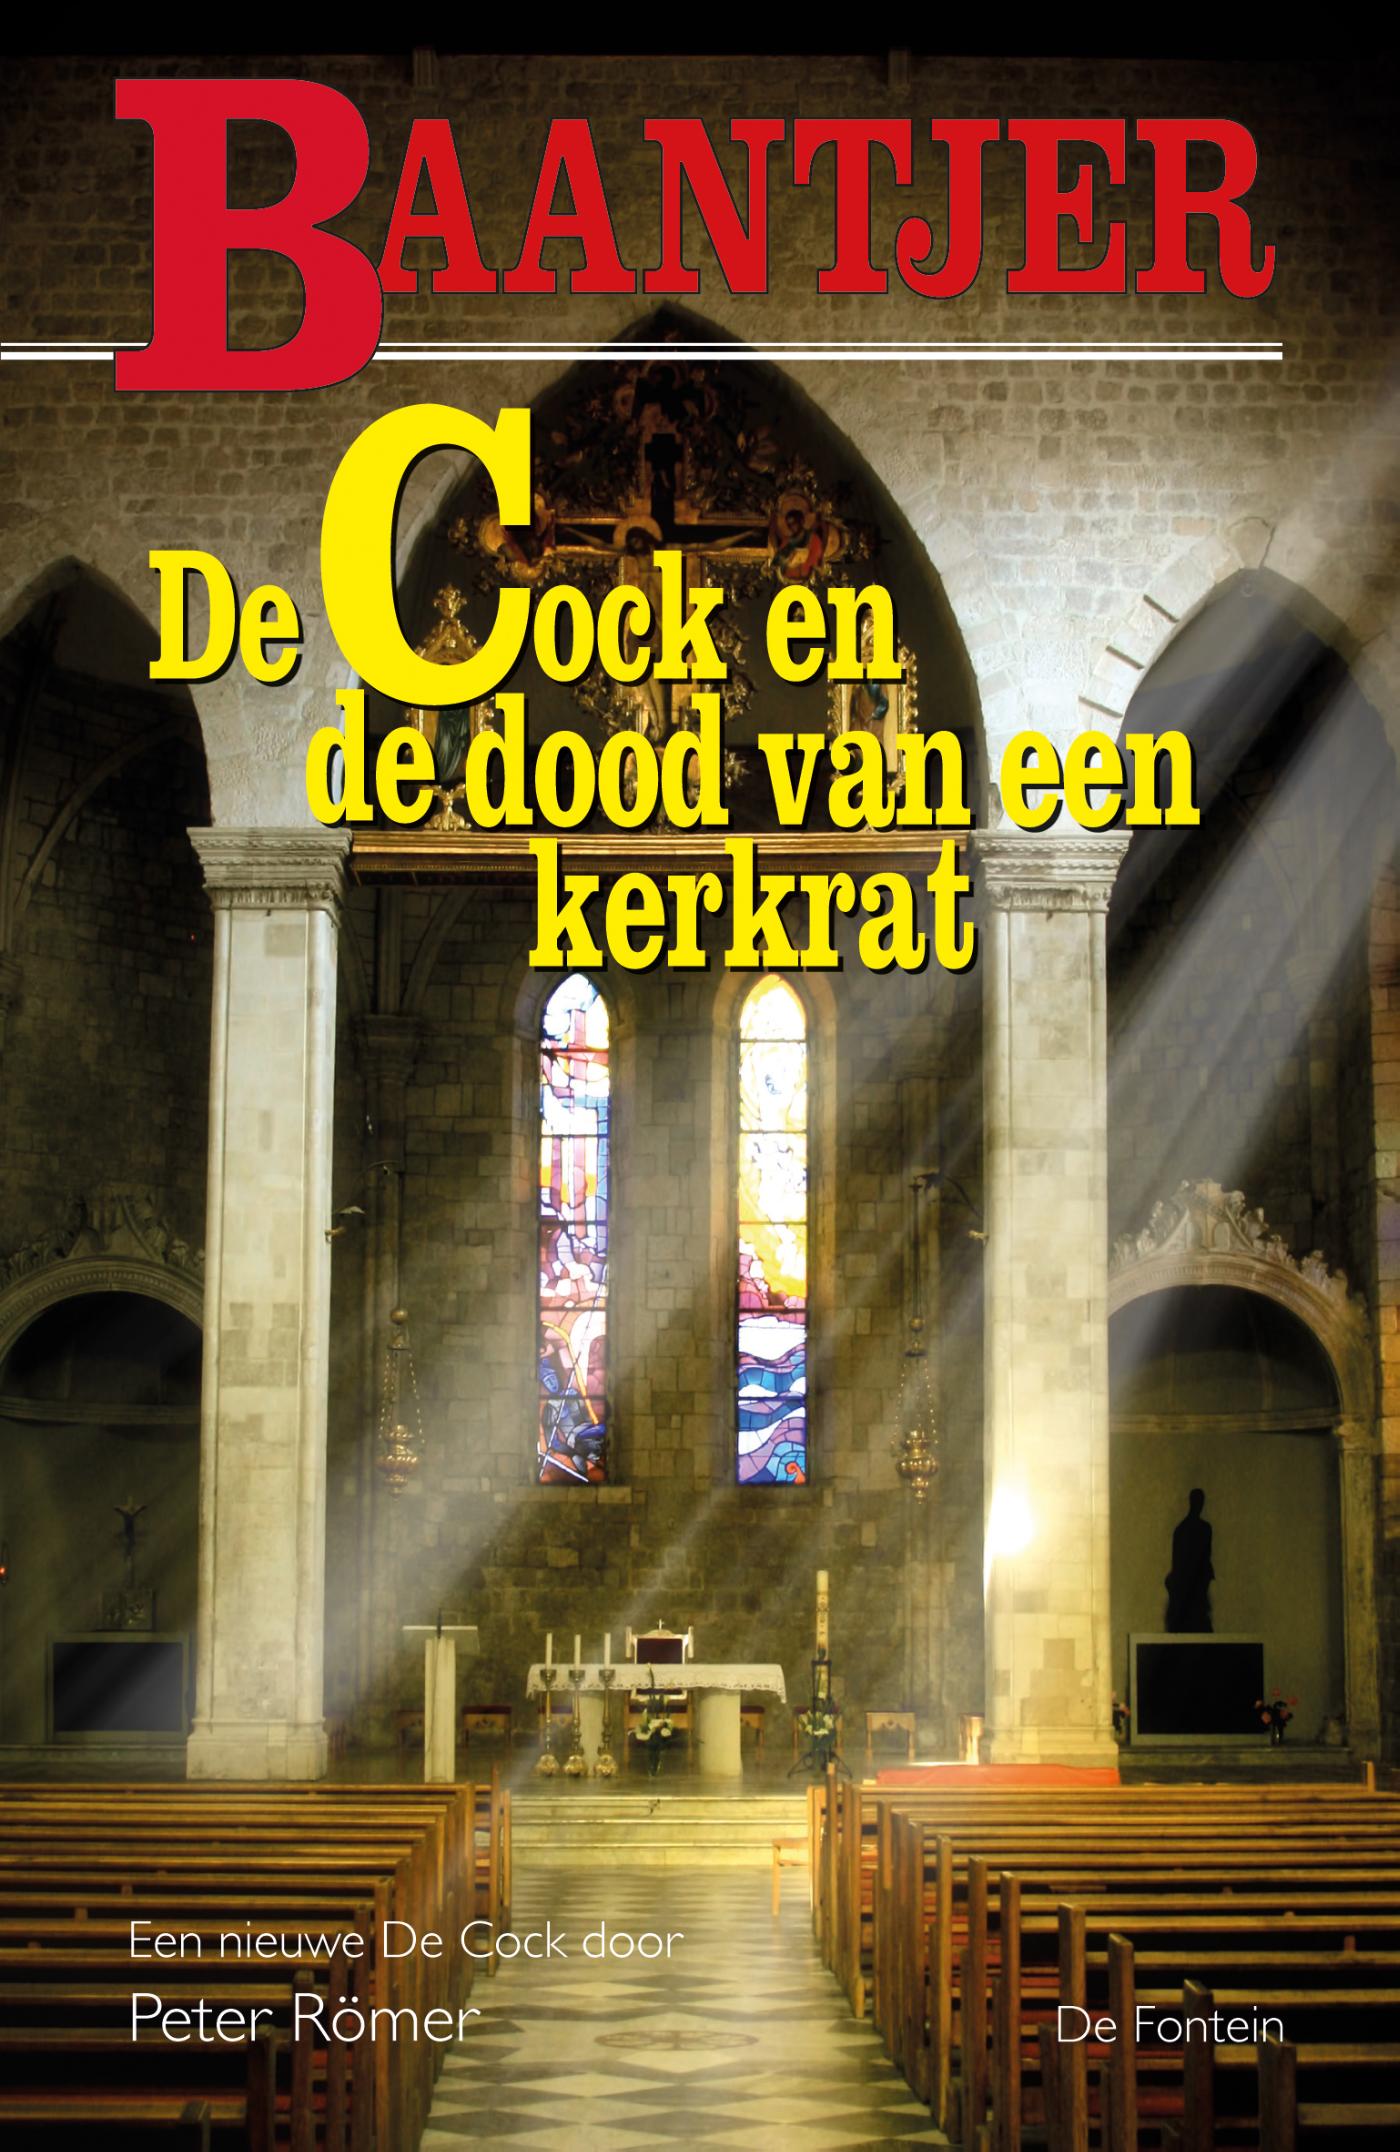 De Cock en de dood van een kerkrat / Baantjer / 83